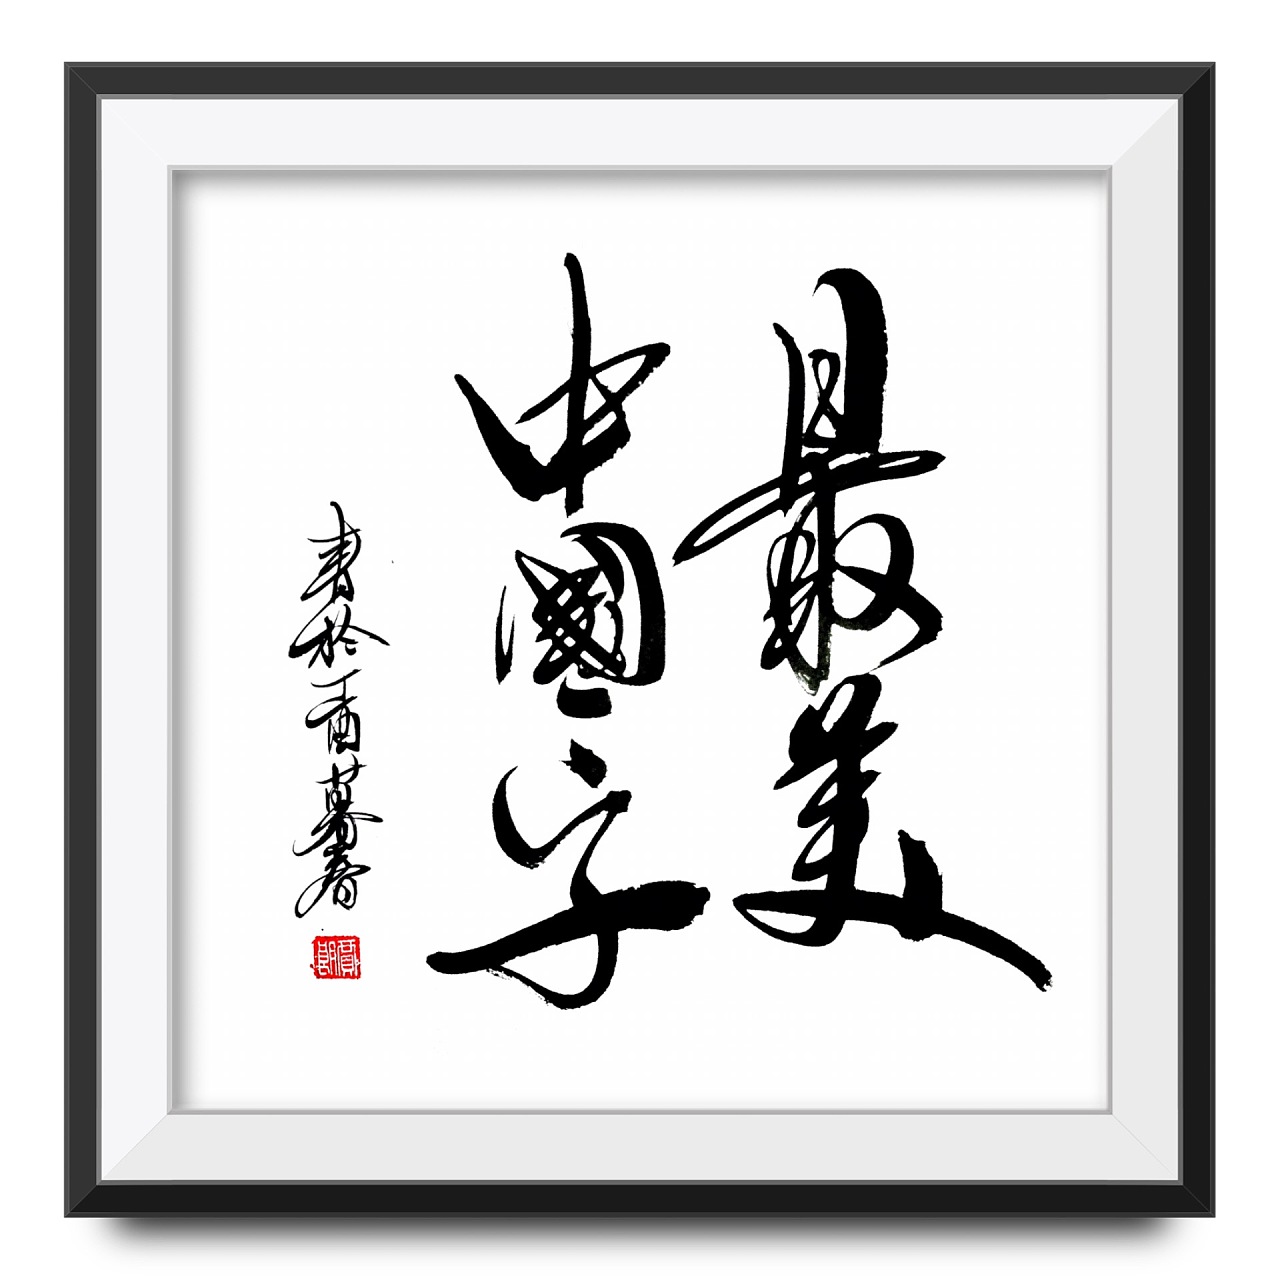 中国 艺术 艺术品 - Pixabay上的免费照片 - Pixabay